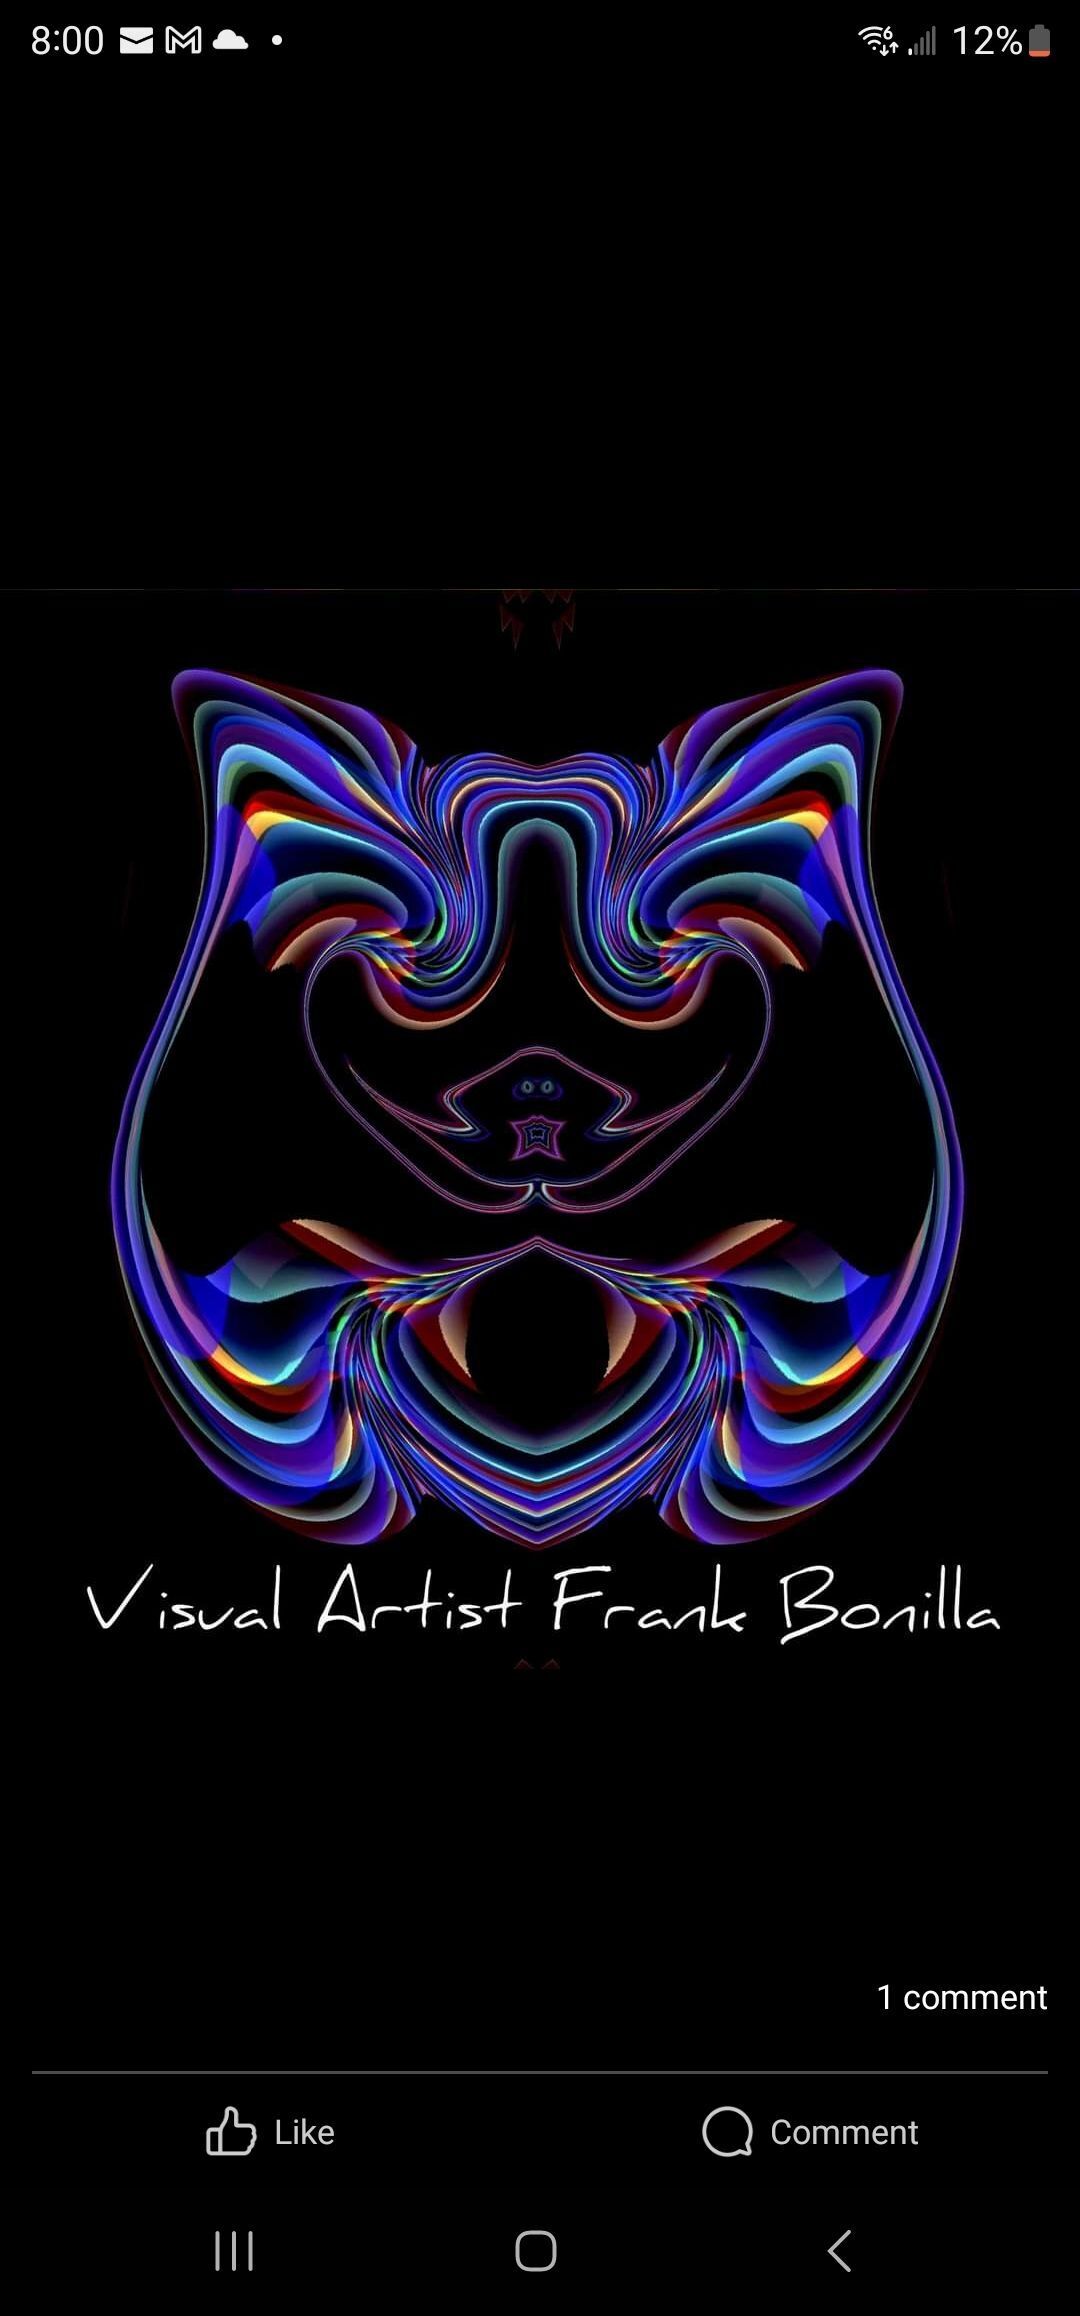 Visual Artist Frank Bonilla